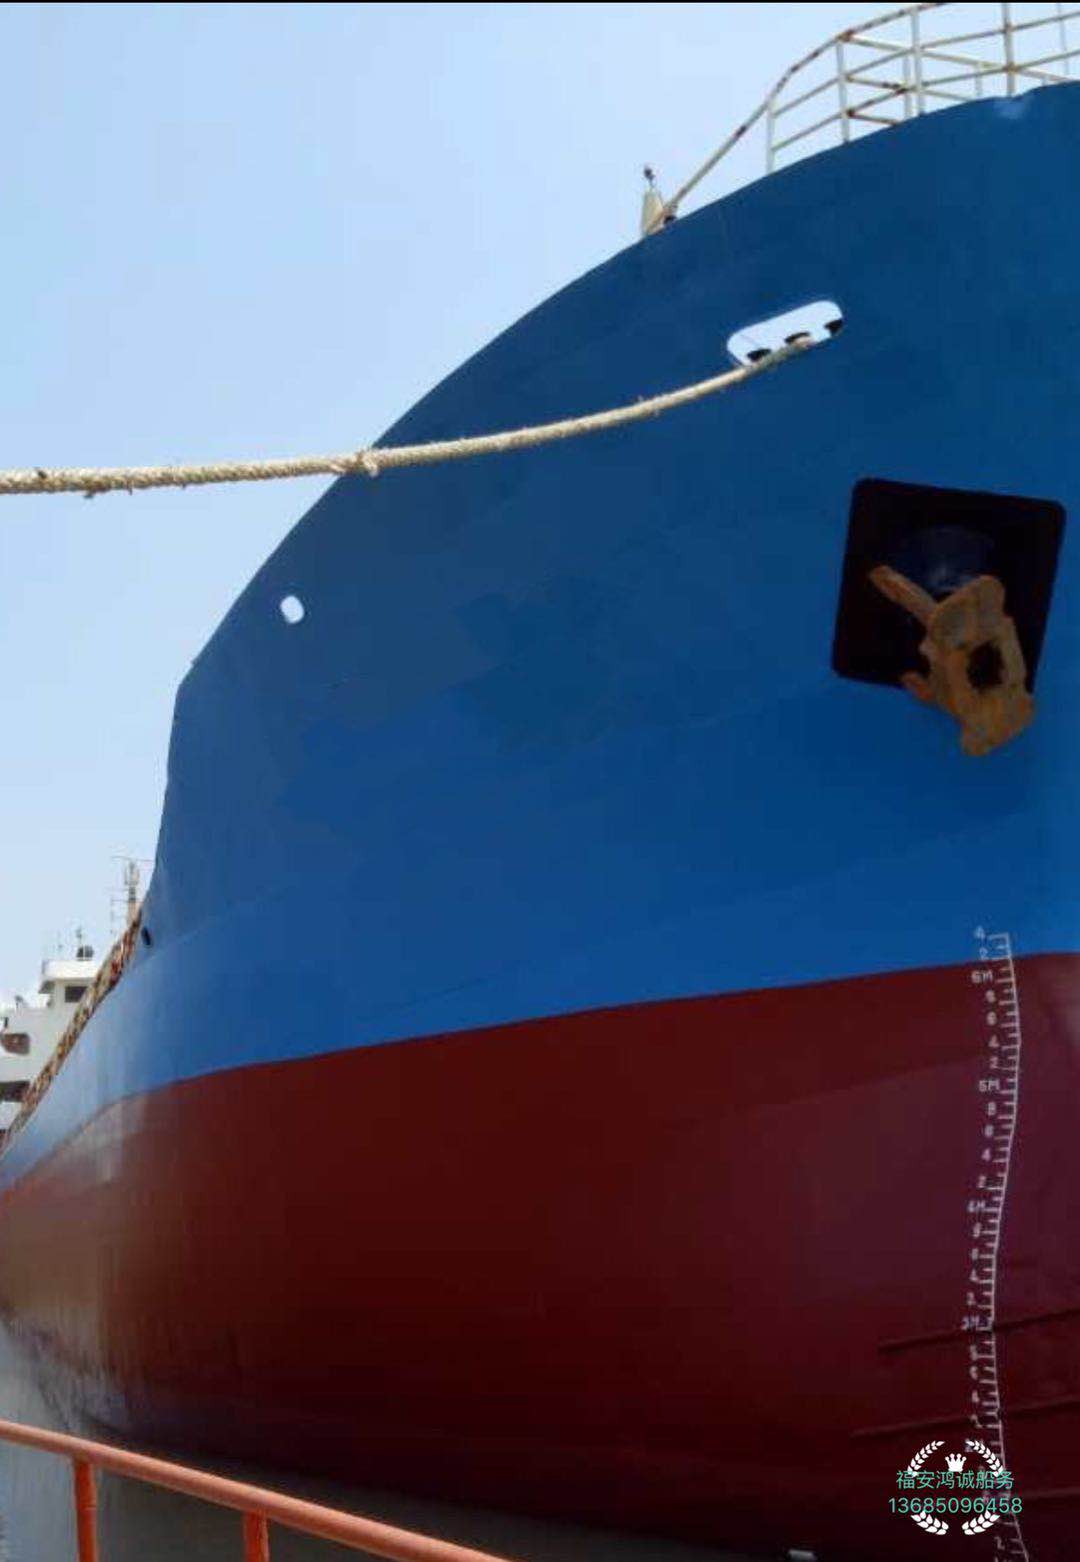 出售4760吨干货船